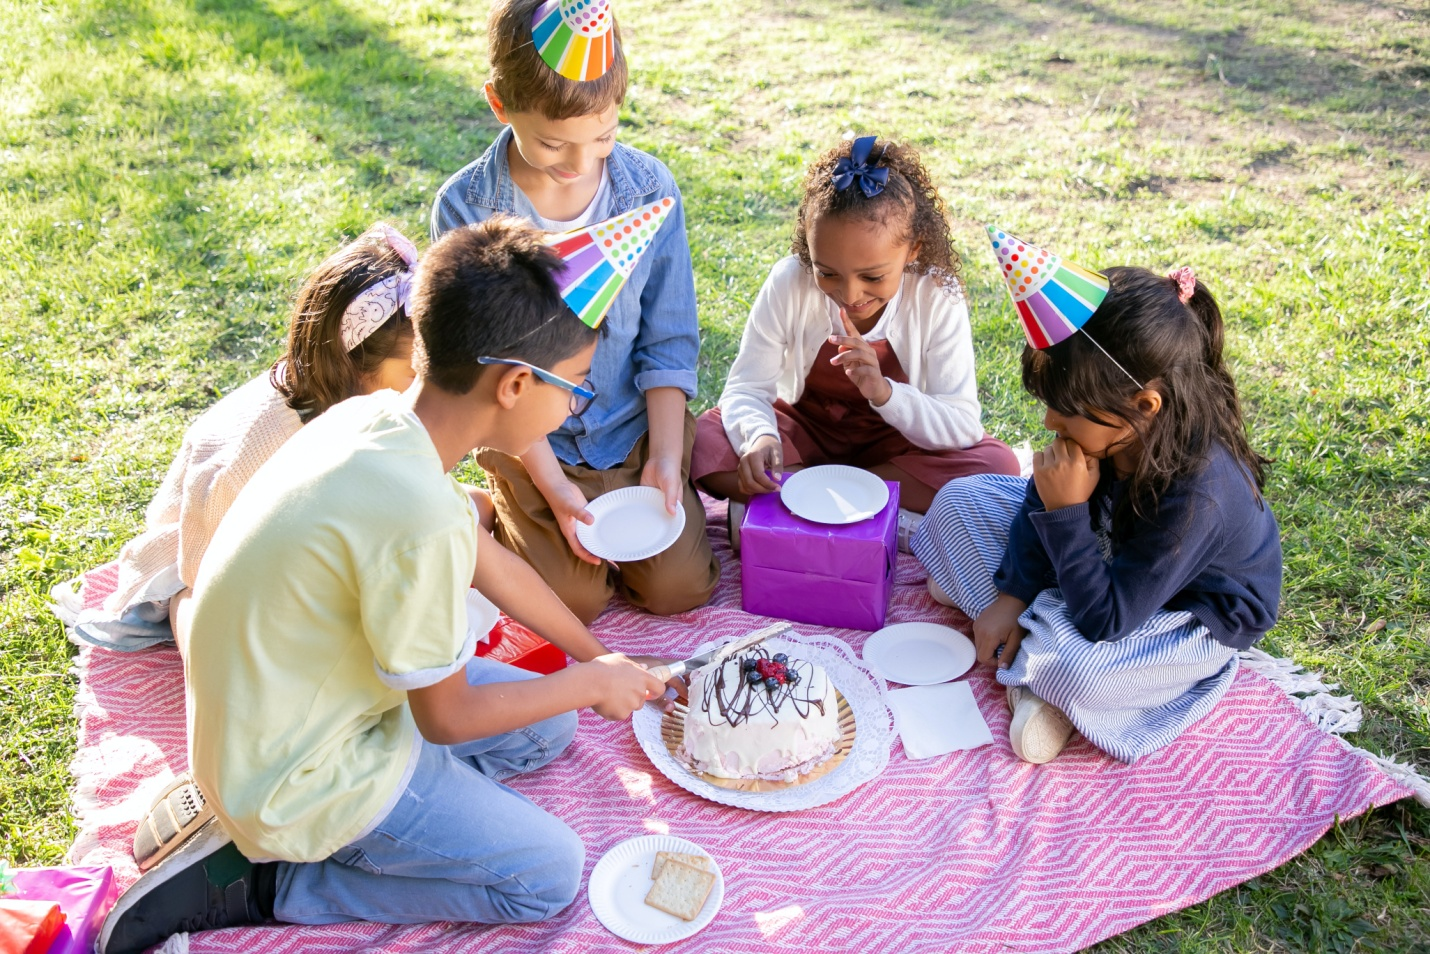 Kids celebrating a birthday